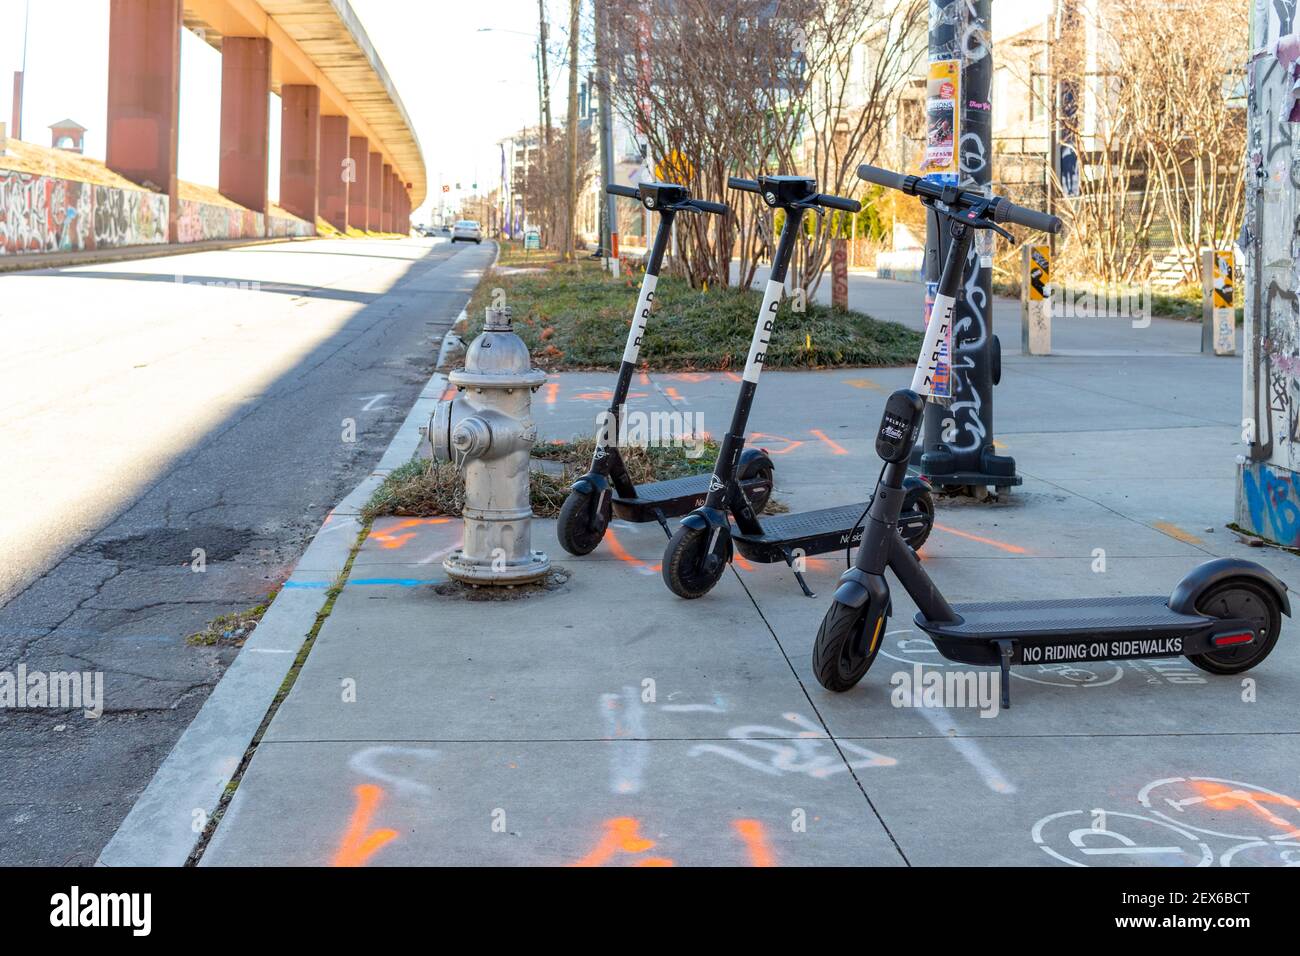 Atlanta, USA - 18 janvier 2021: Vélos de ville disponibles à la location pour encourager les gens à utiliser des moyens de transport alternatifs qui est bon pour la santé et l'envir Banque D'Images